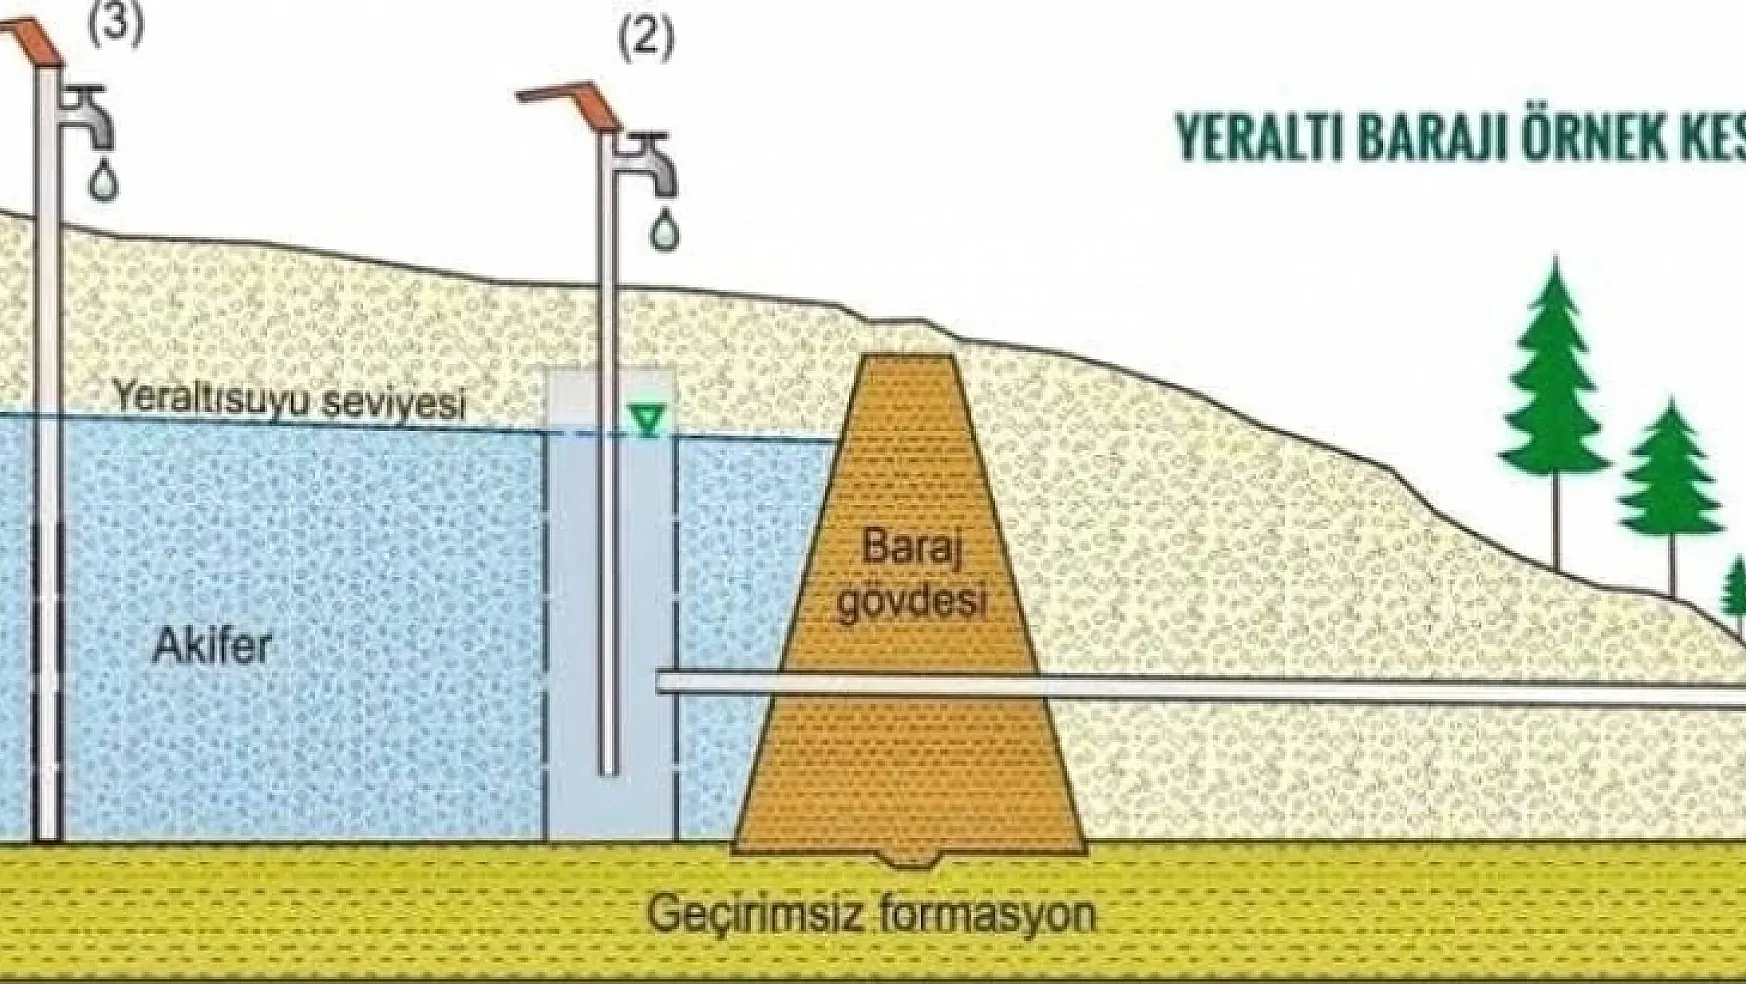 Muğla'ya ilk yeraltı barajı yapılıyor